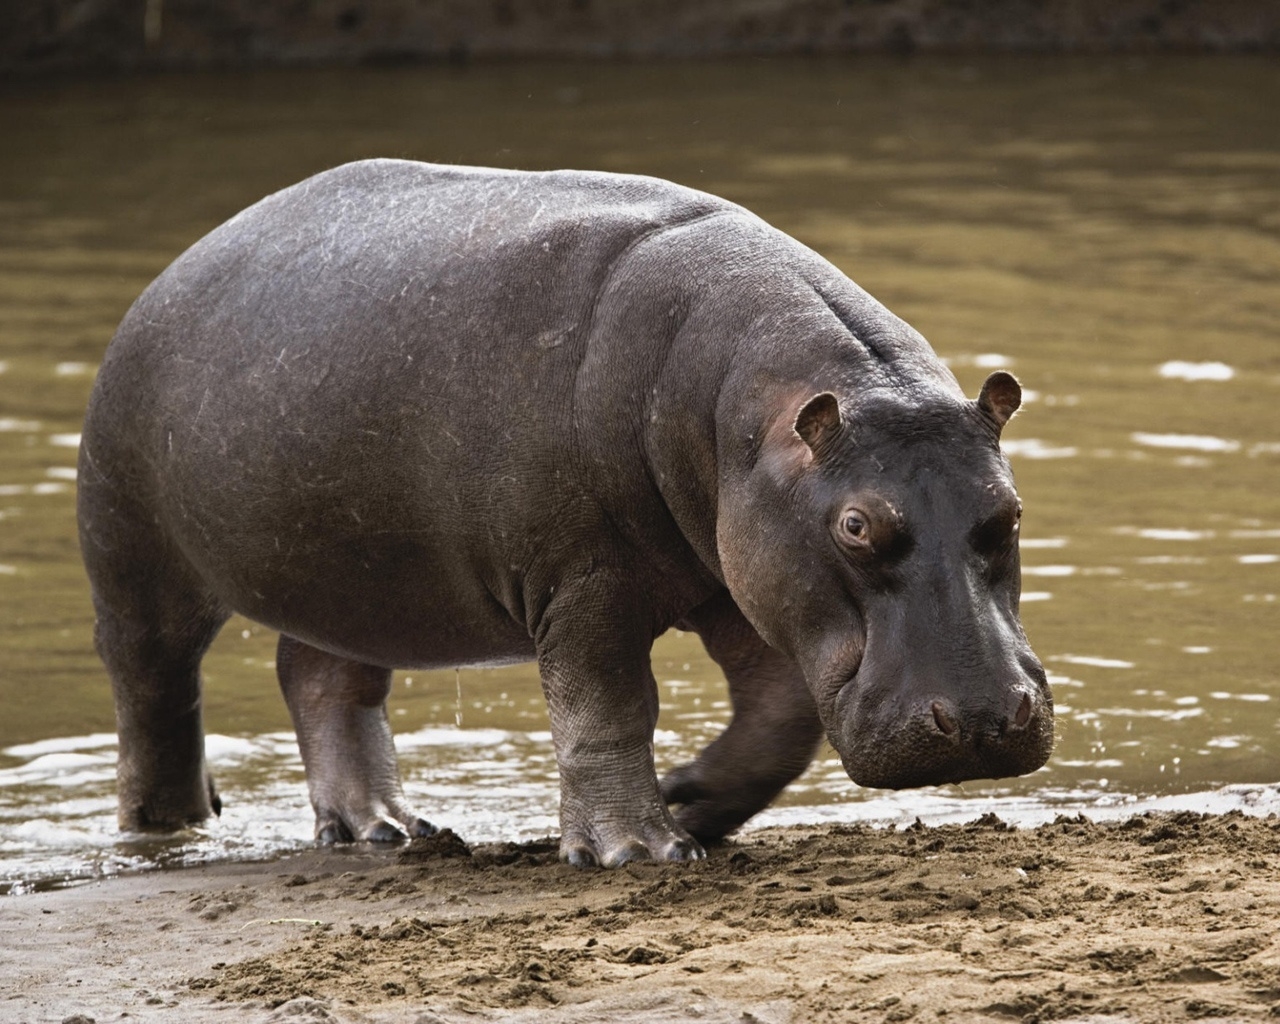 Big Hippopotamus for 1280 x 1024 resolution